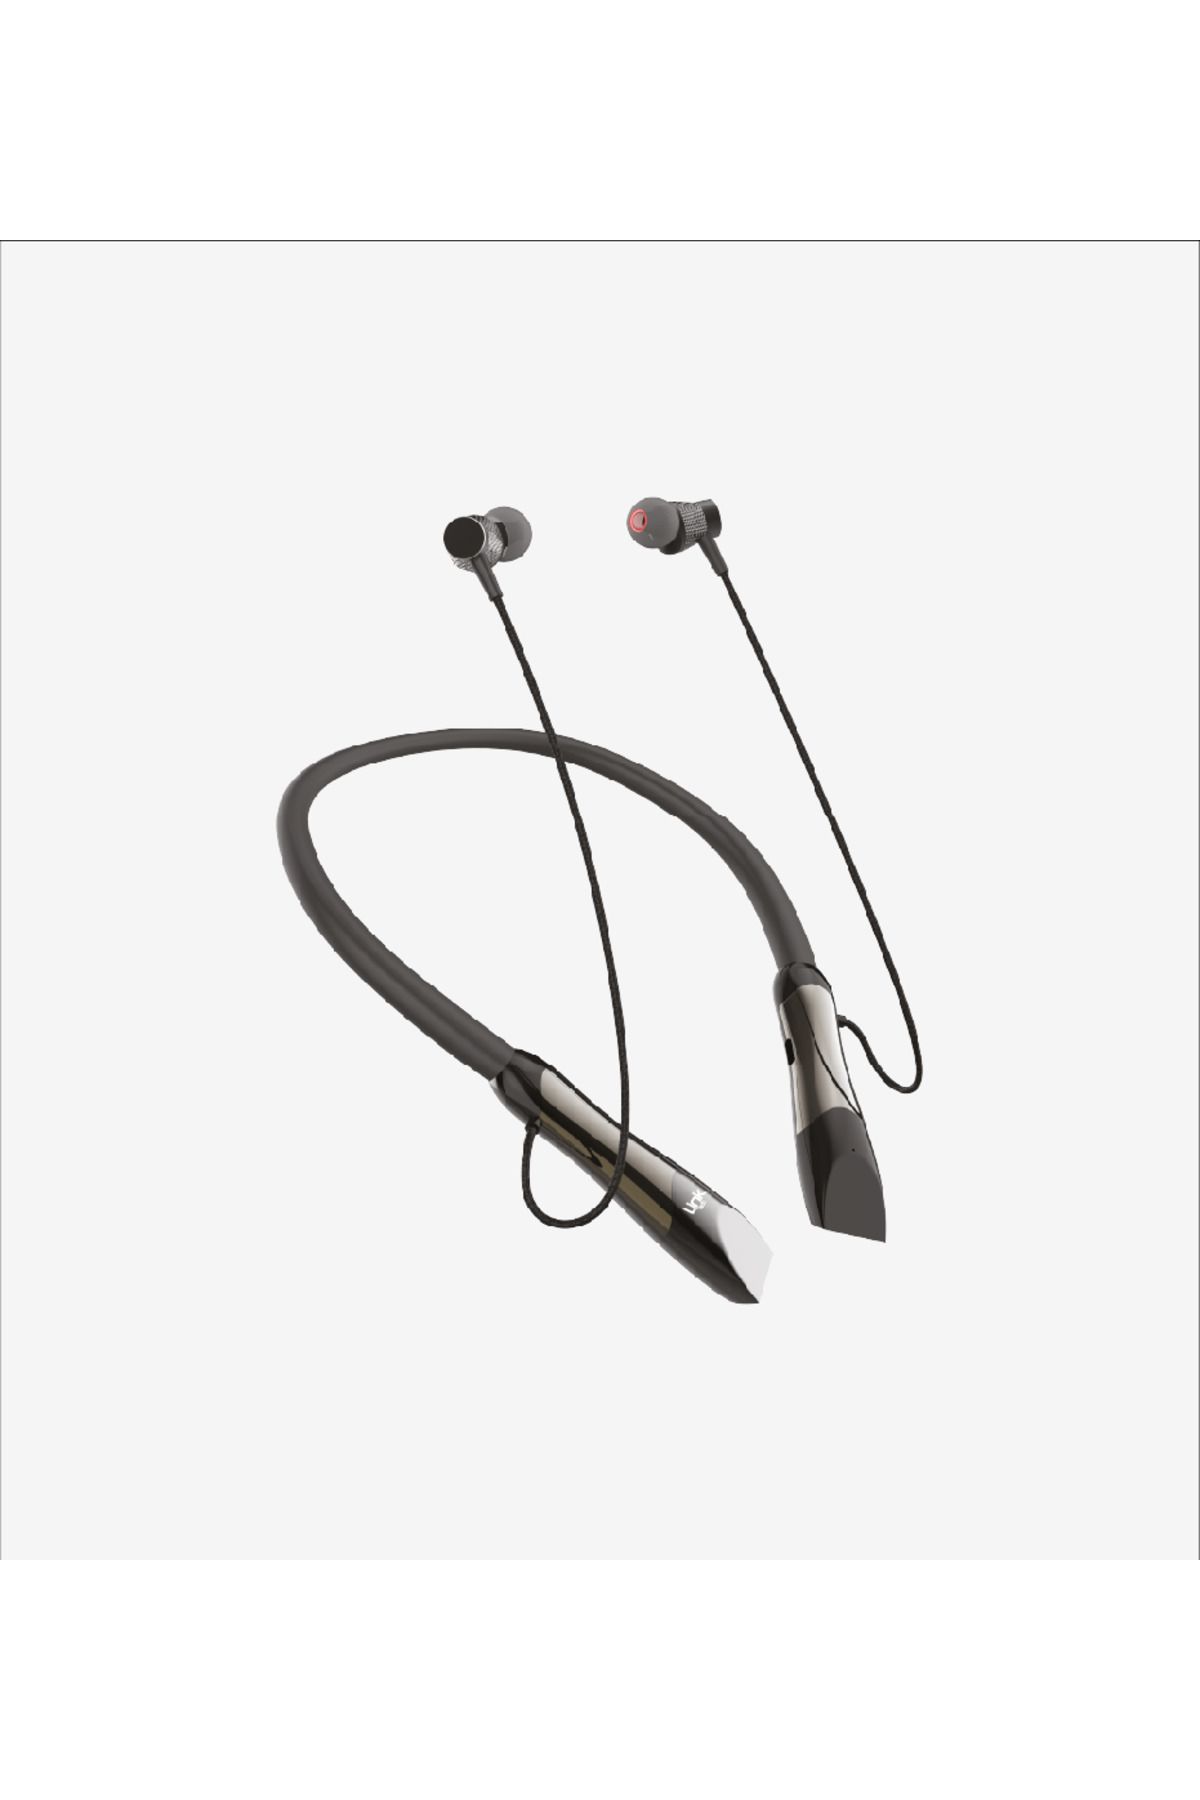 Linktech Boyun Askılı Silikonlu Spor Bluetooth Kulaklık H991 Neckband 17.5 Saat şarj kapasiteli